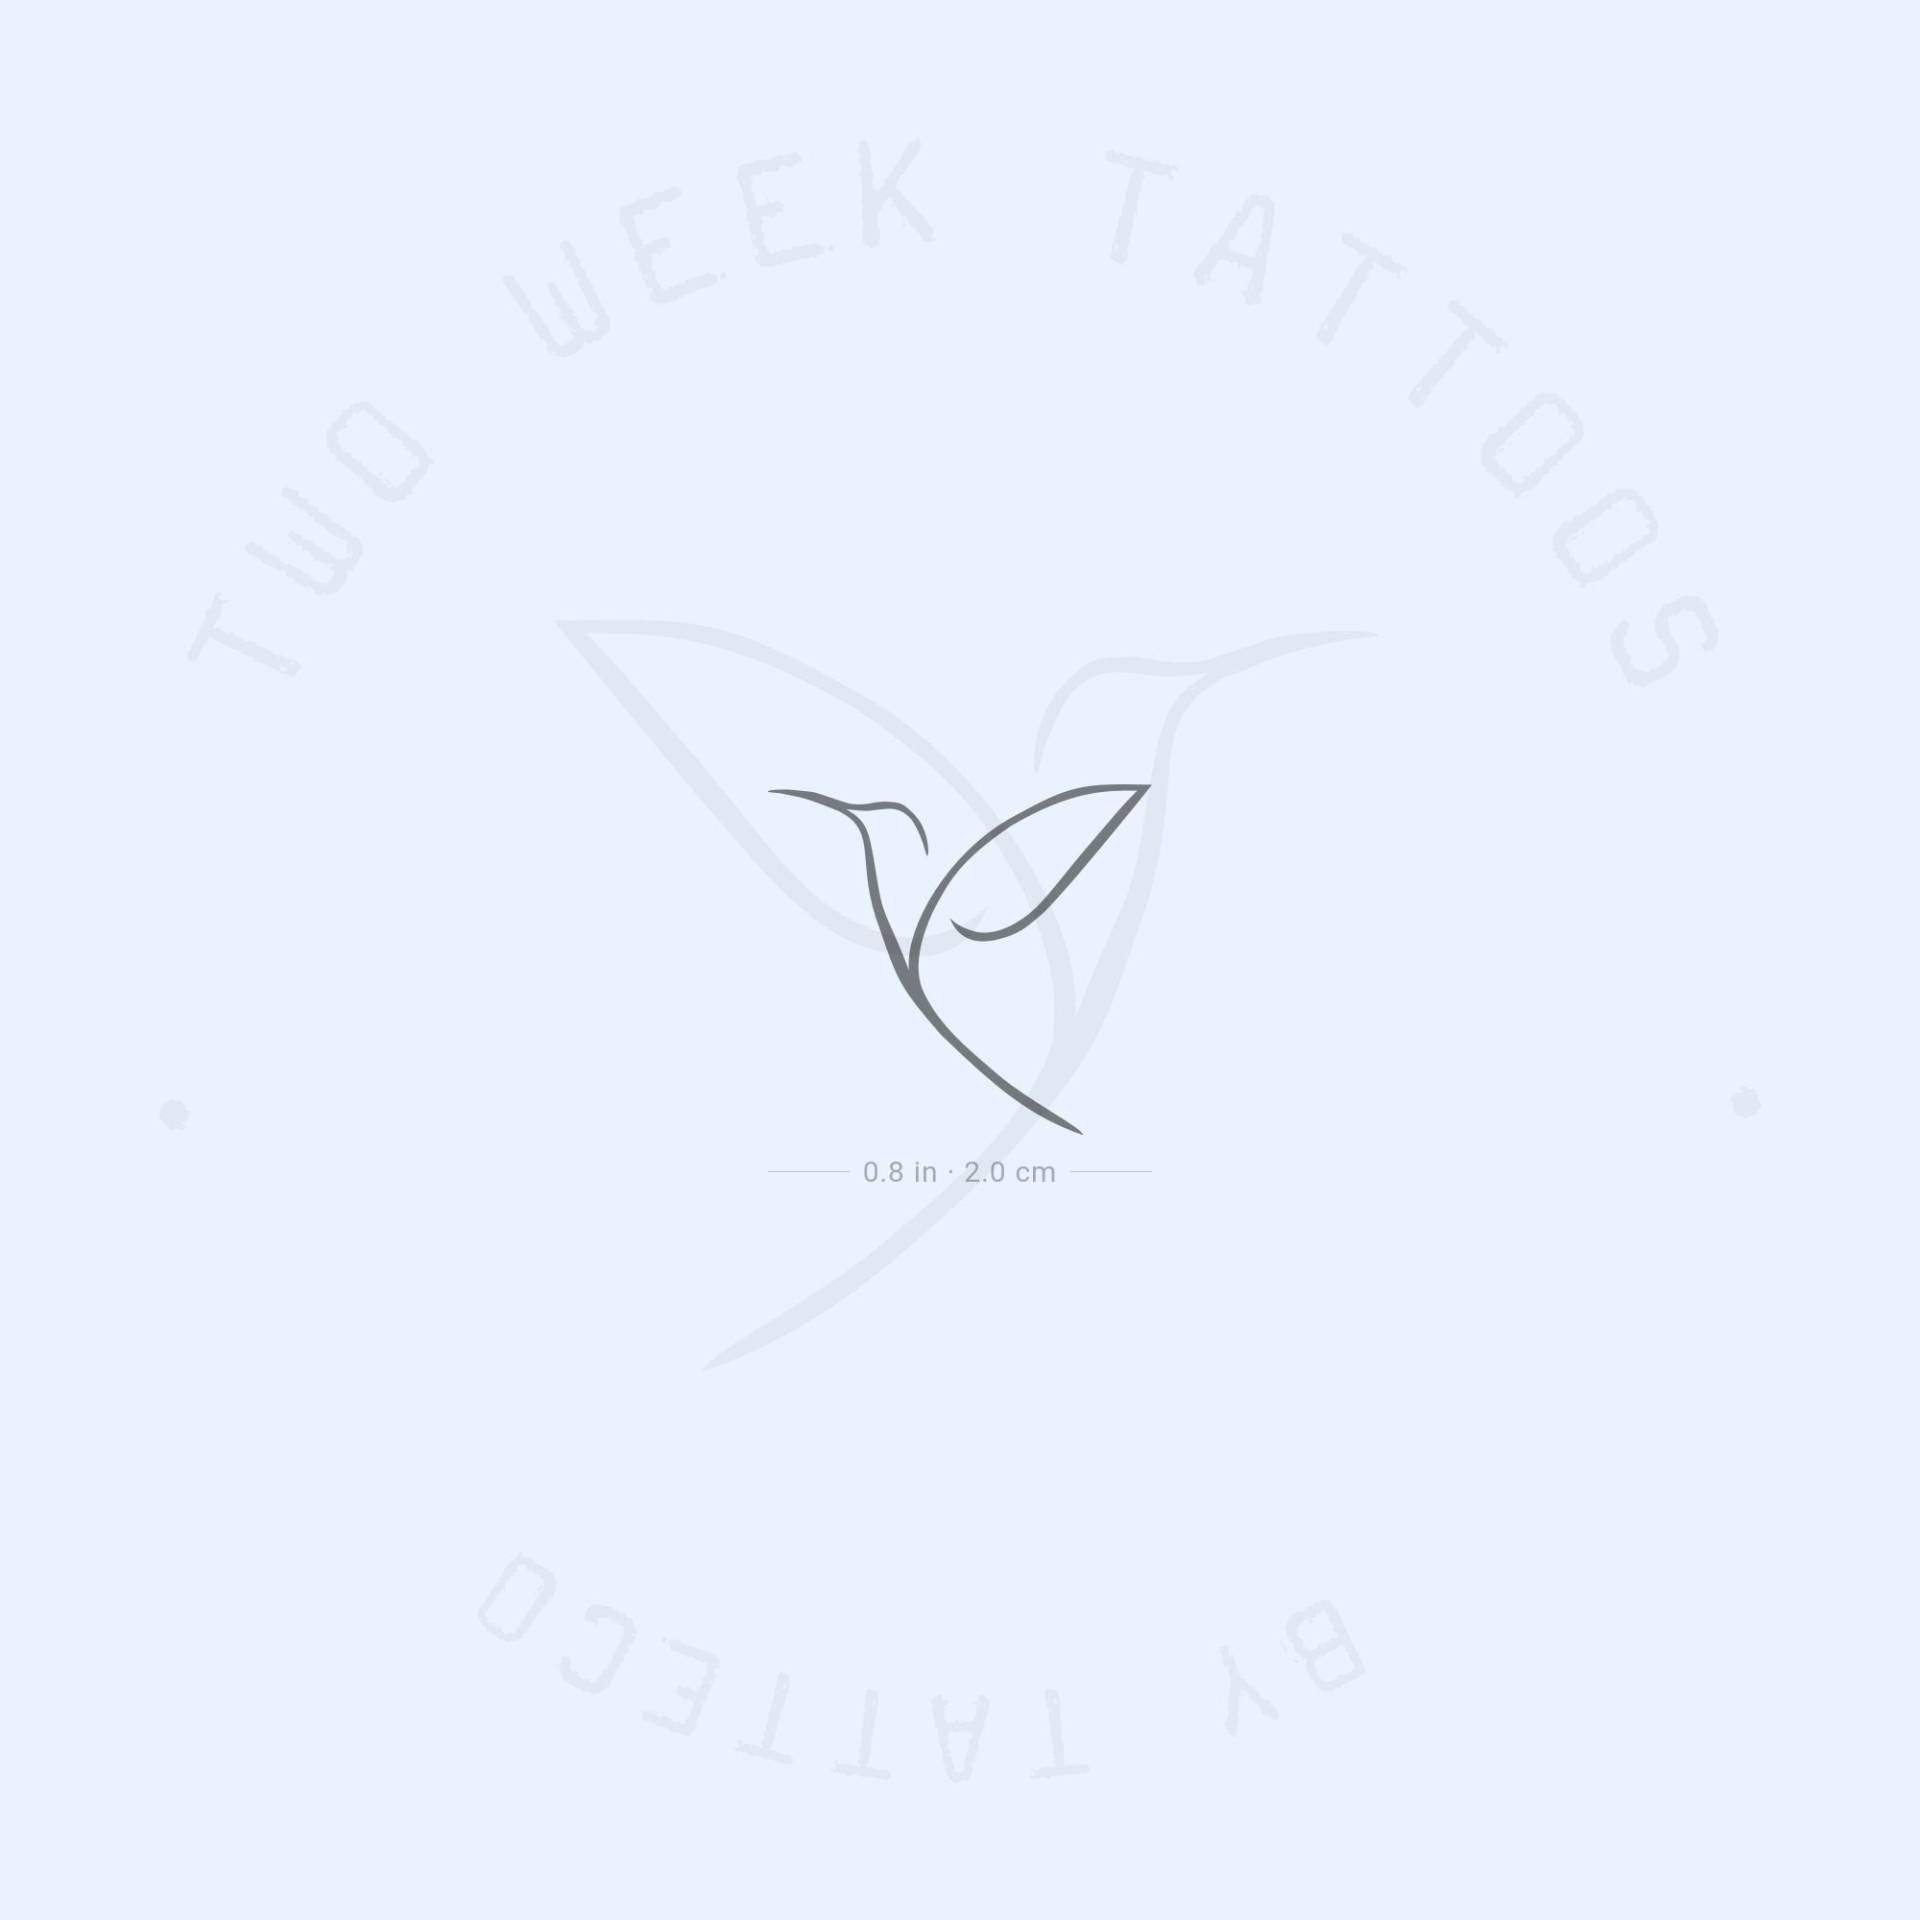 Minimalist Kolibri Semi-Permanent Tattoo | 2Er Set von twoweektattoos